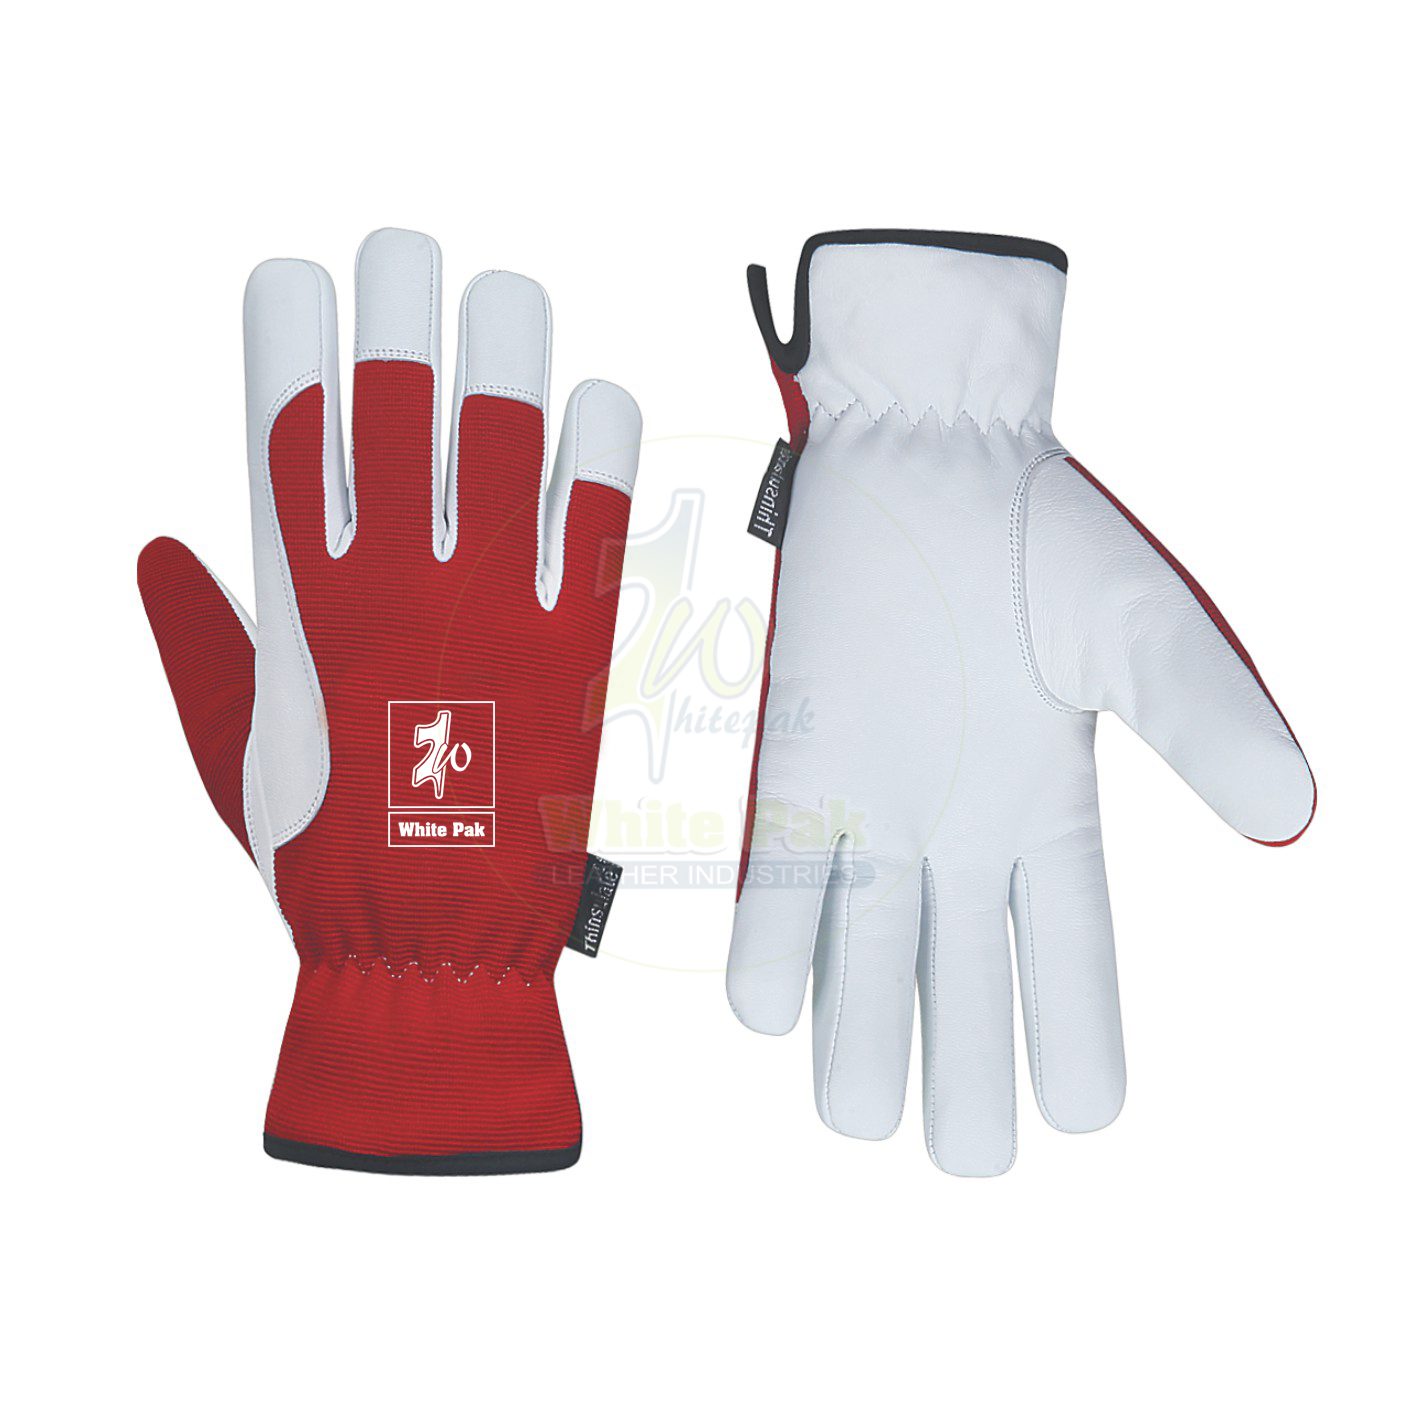 Premium Winter Assembling Gloves